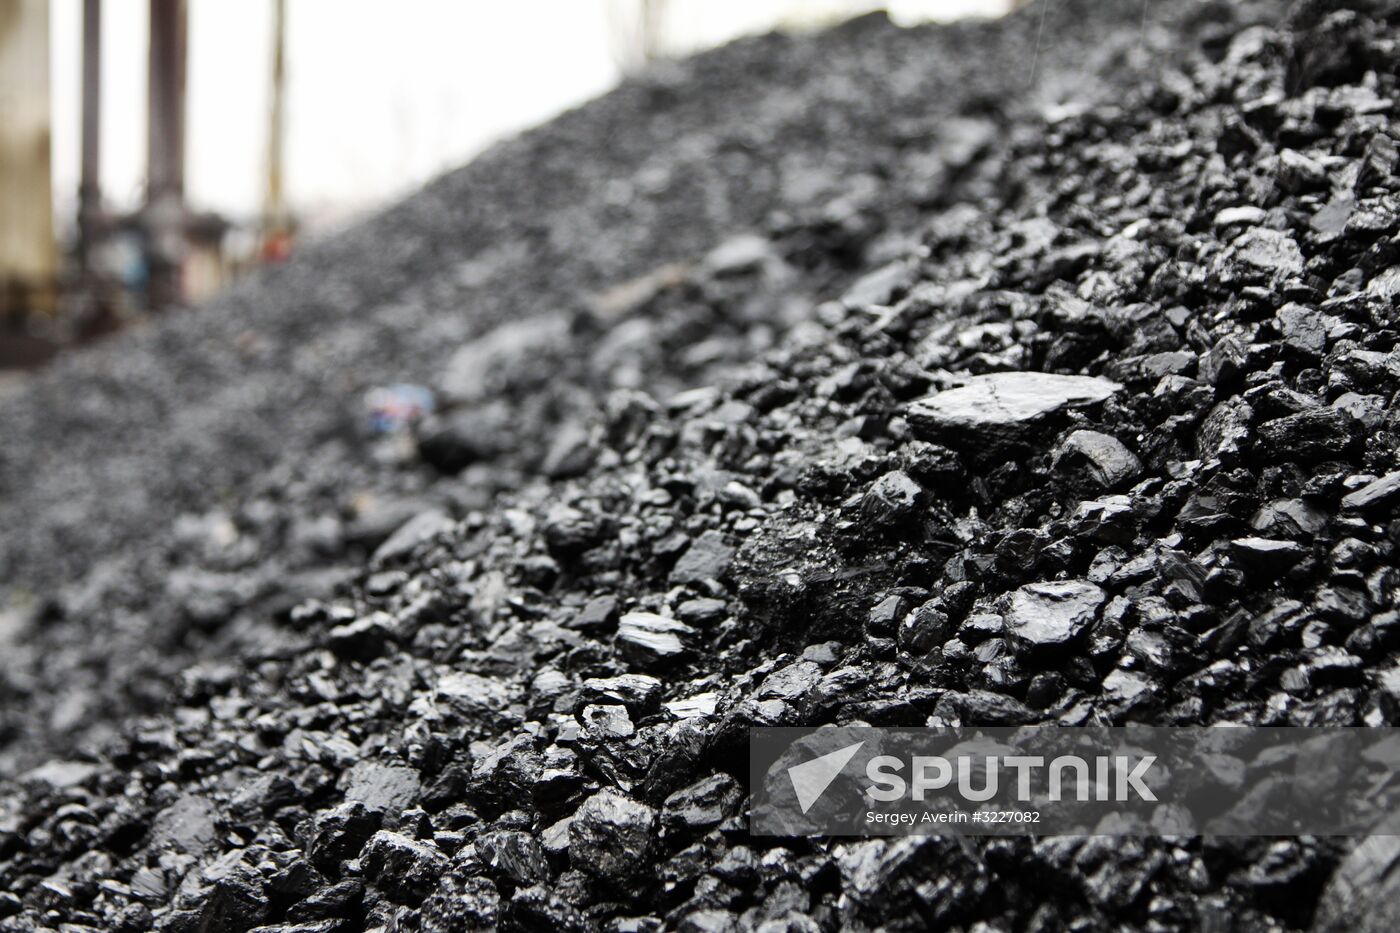 Komsomolets Donbassa coal mine in Donetsk Region